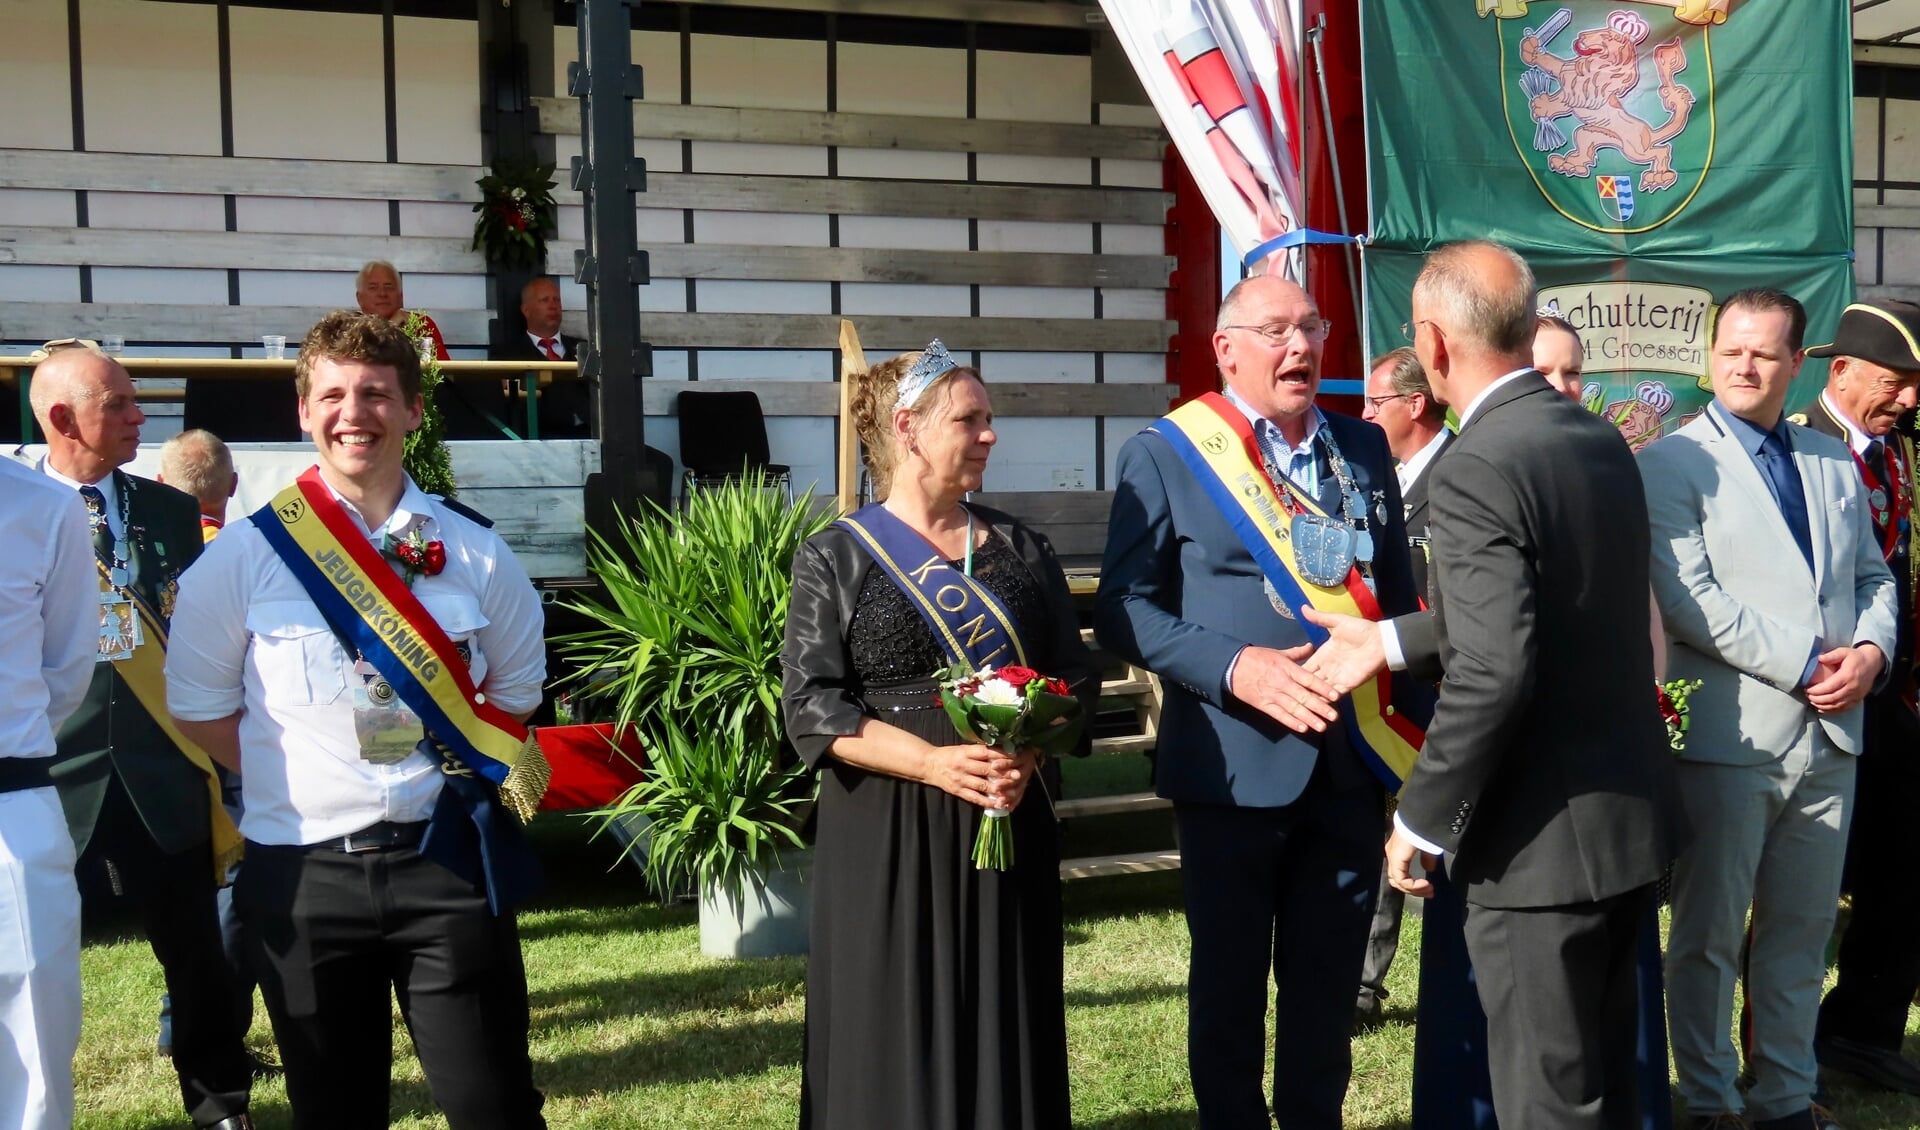 EMM Groessen-voorzitter John de Lorijn feliciteert het nieuwe Kringkoningspaar Jan Kelderman en Rita van Haren. Lars Som, de nieuwe jeugdkoning, kijkt lachend toe.